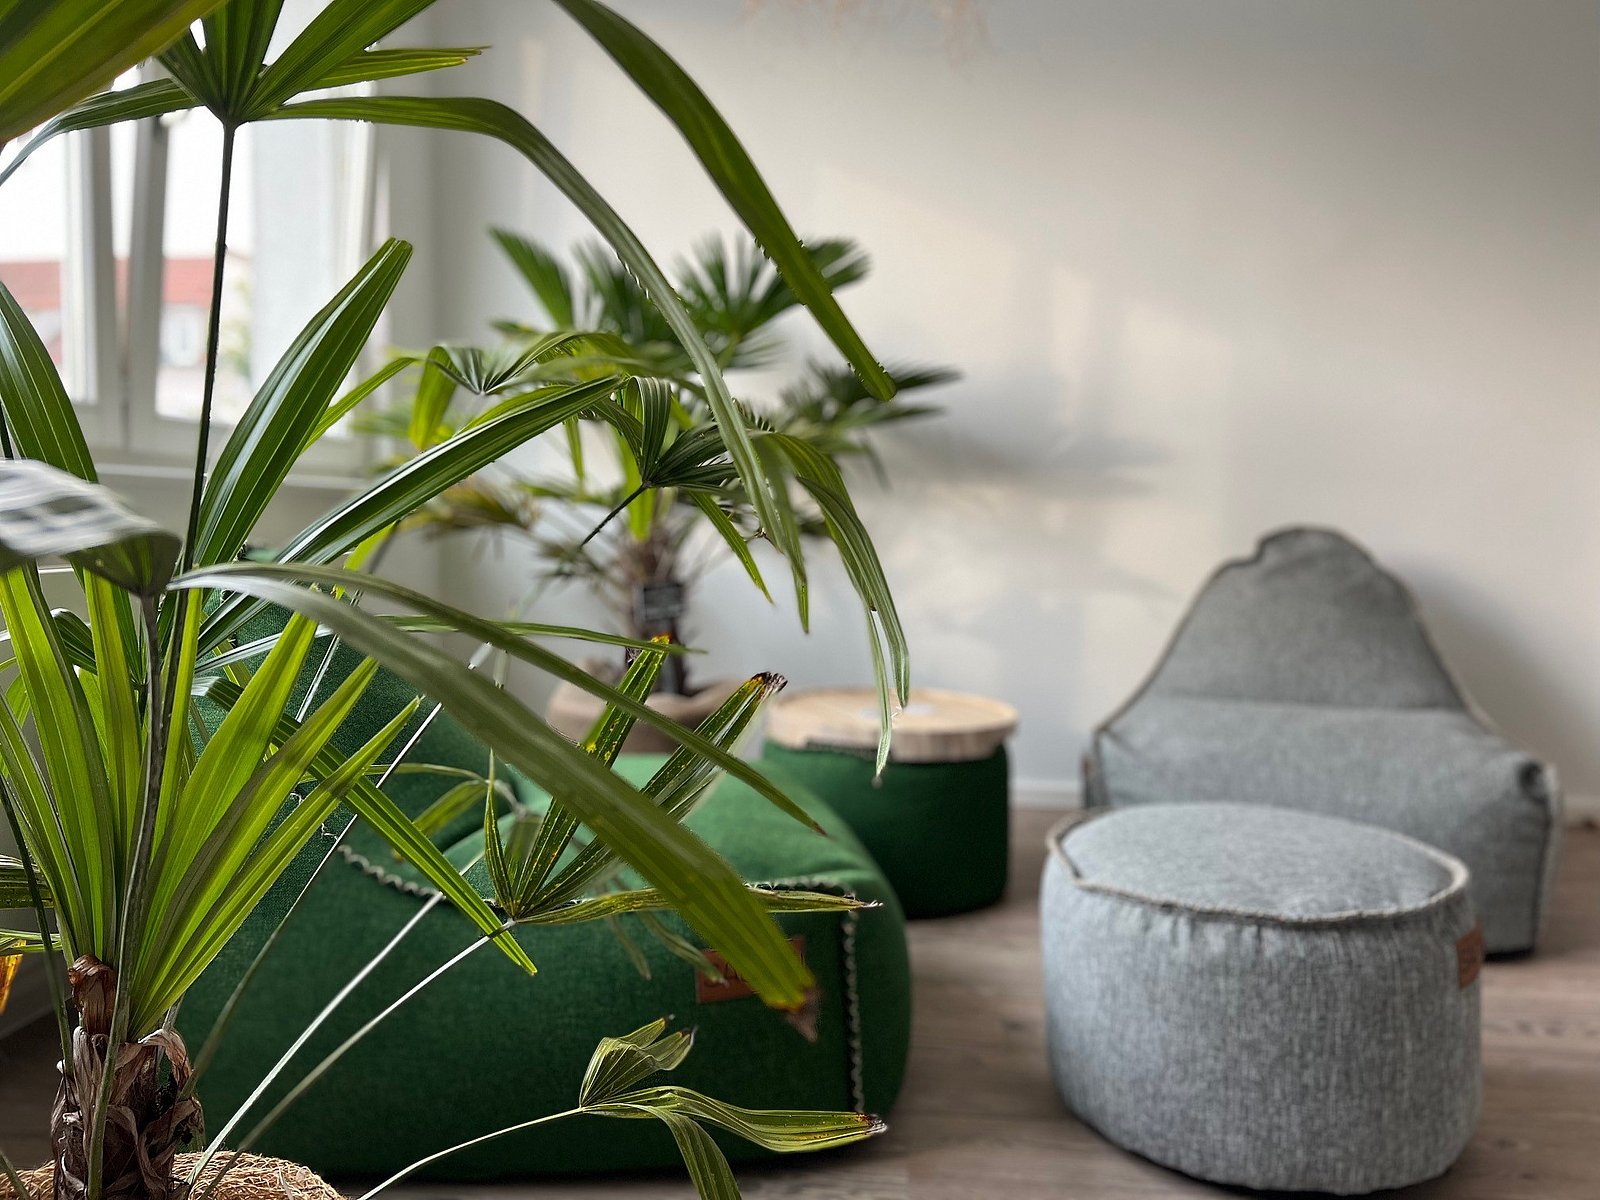 Im Vordergrund ist eine Pflanze abgebildet, im Hintergrund befinden sich zwei gemütliche Sessel aus grobem Material in den Farben grün und grau sowie zwei zylinder-förmige Hocker in den selben Farben.